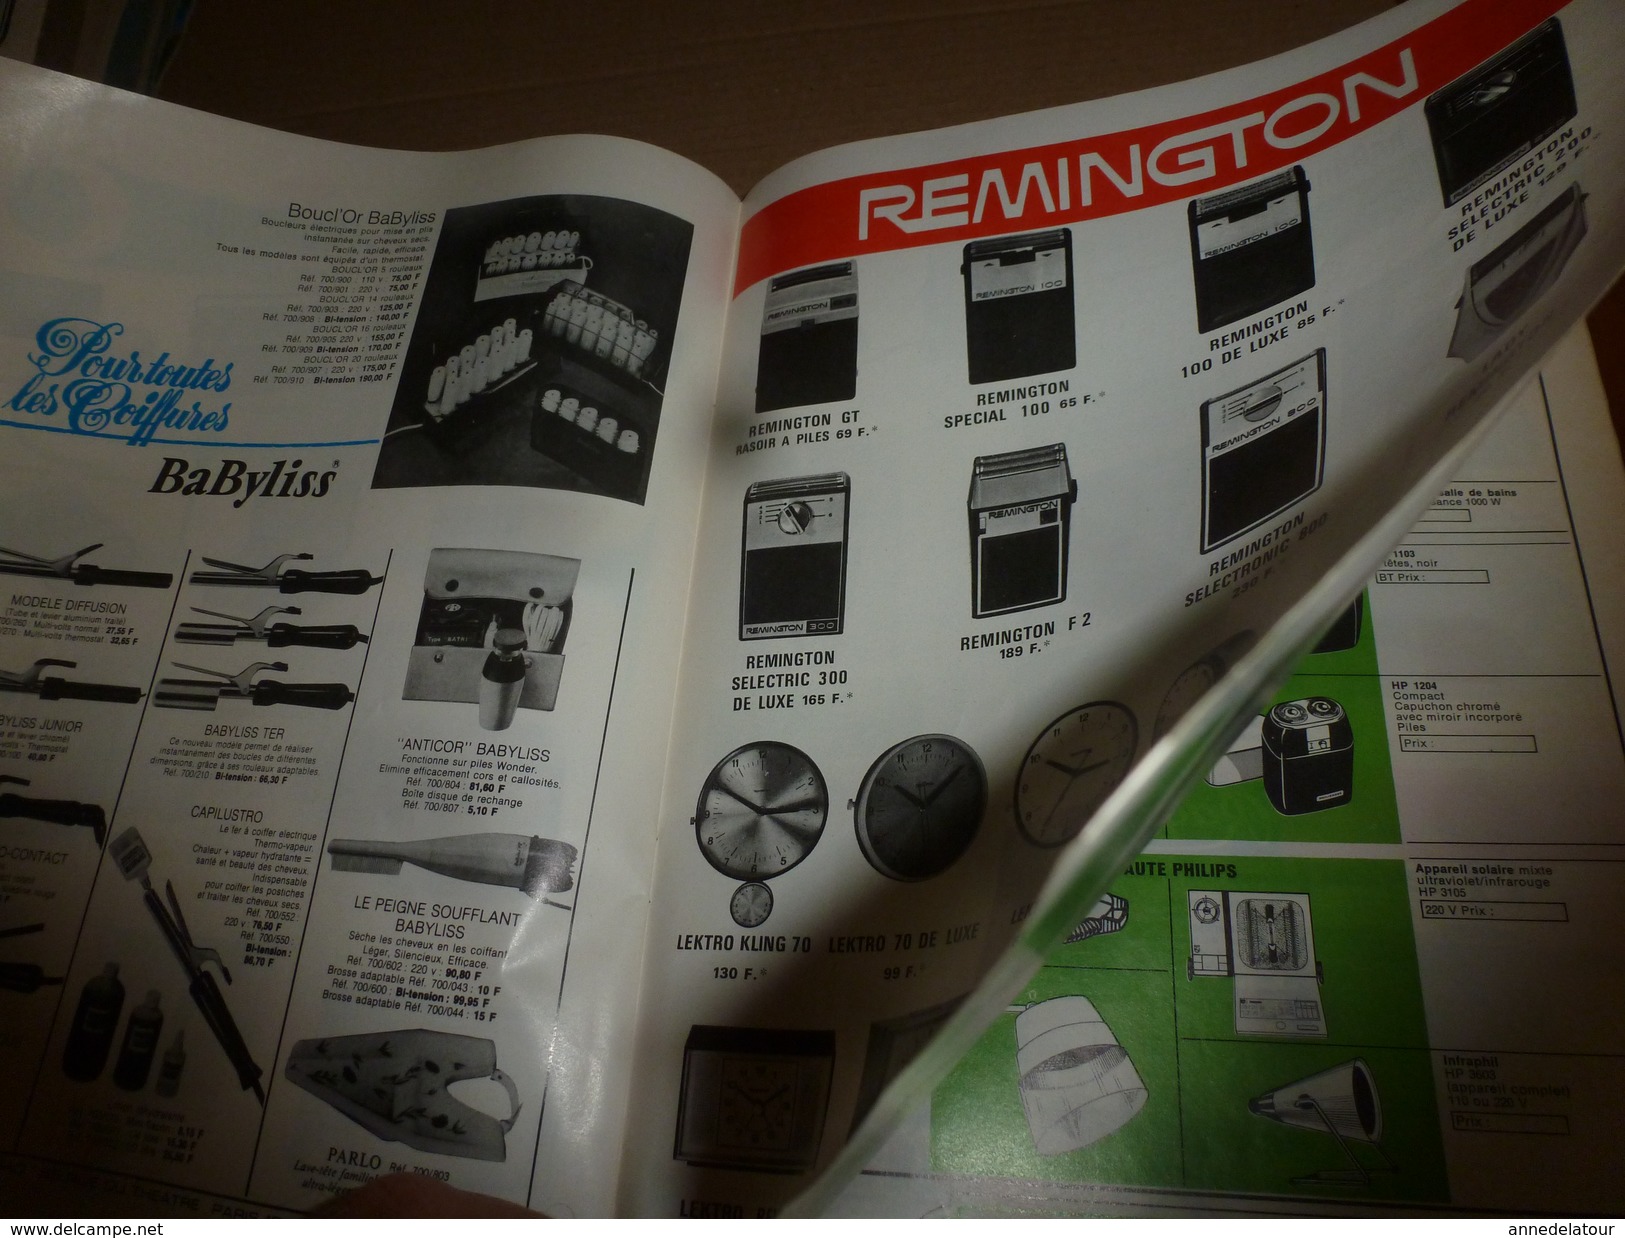 1971  La Chaine de Distribution SCAME vend moins cher Transistors,Electrophones, etc